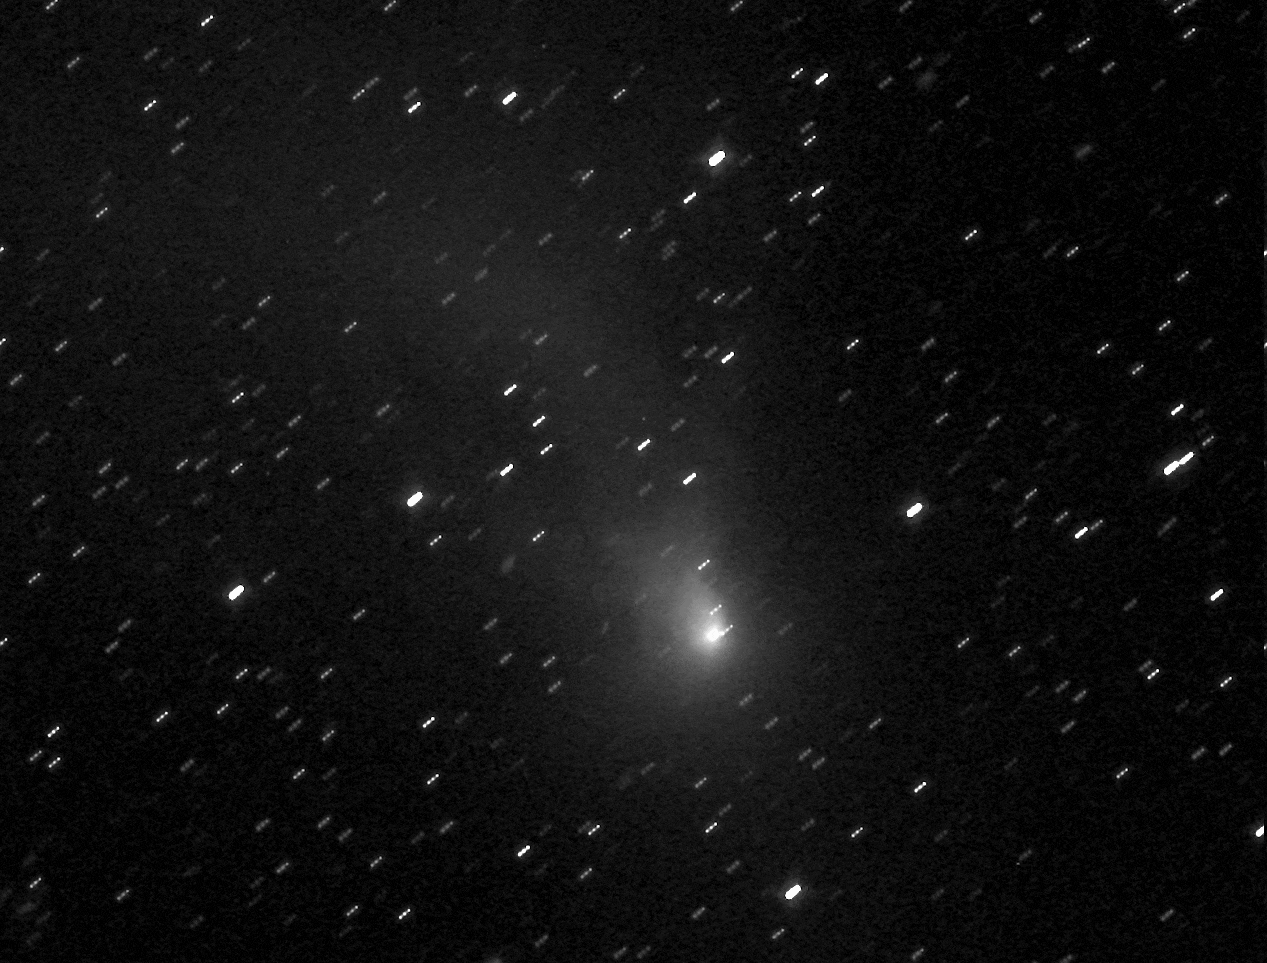 Der dynamische Komet C/2016 R2 im Sternbild Stier